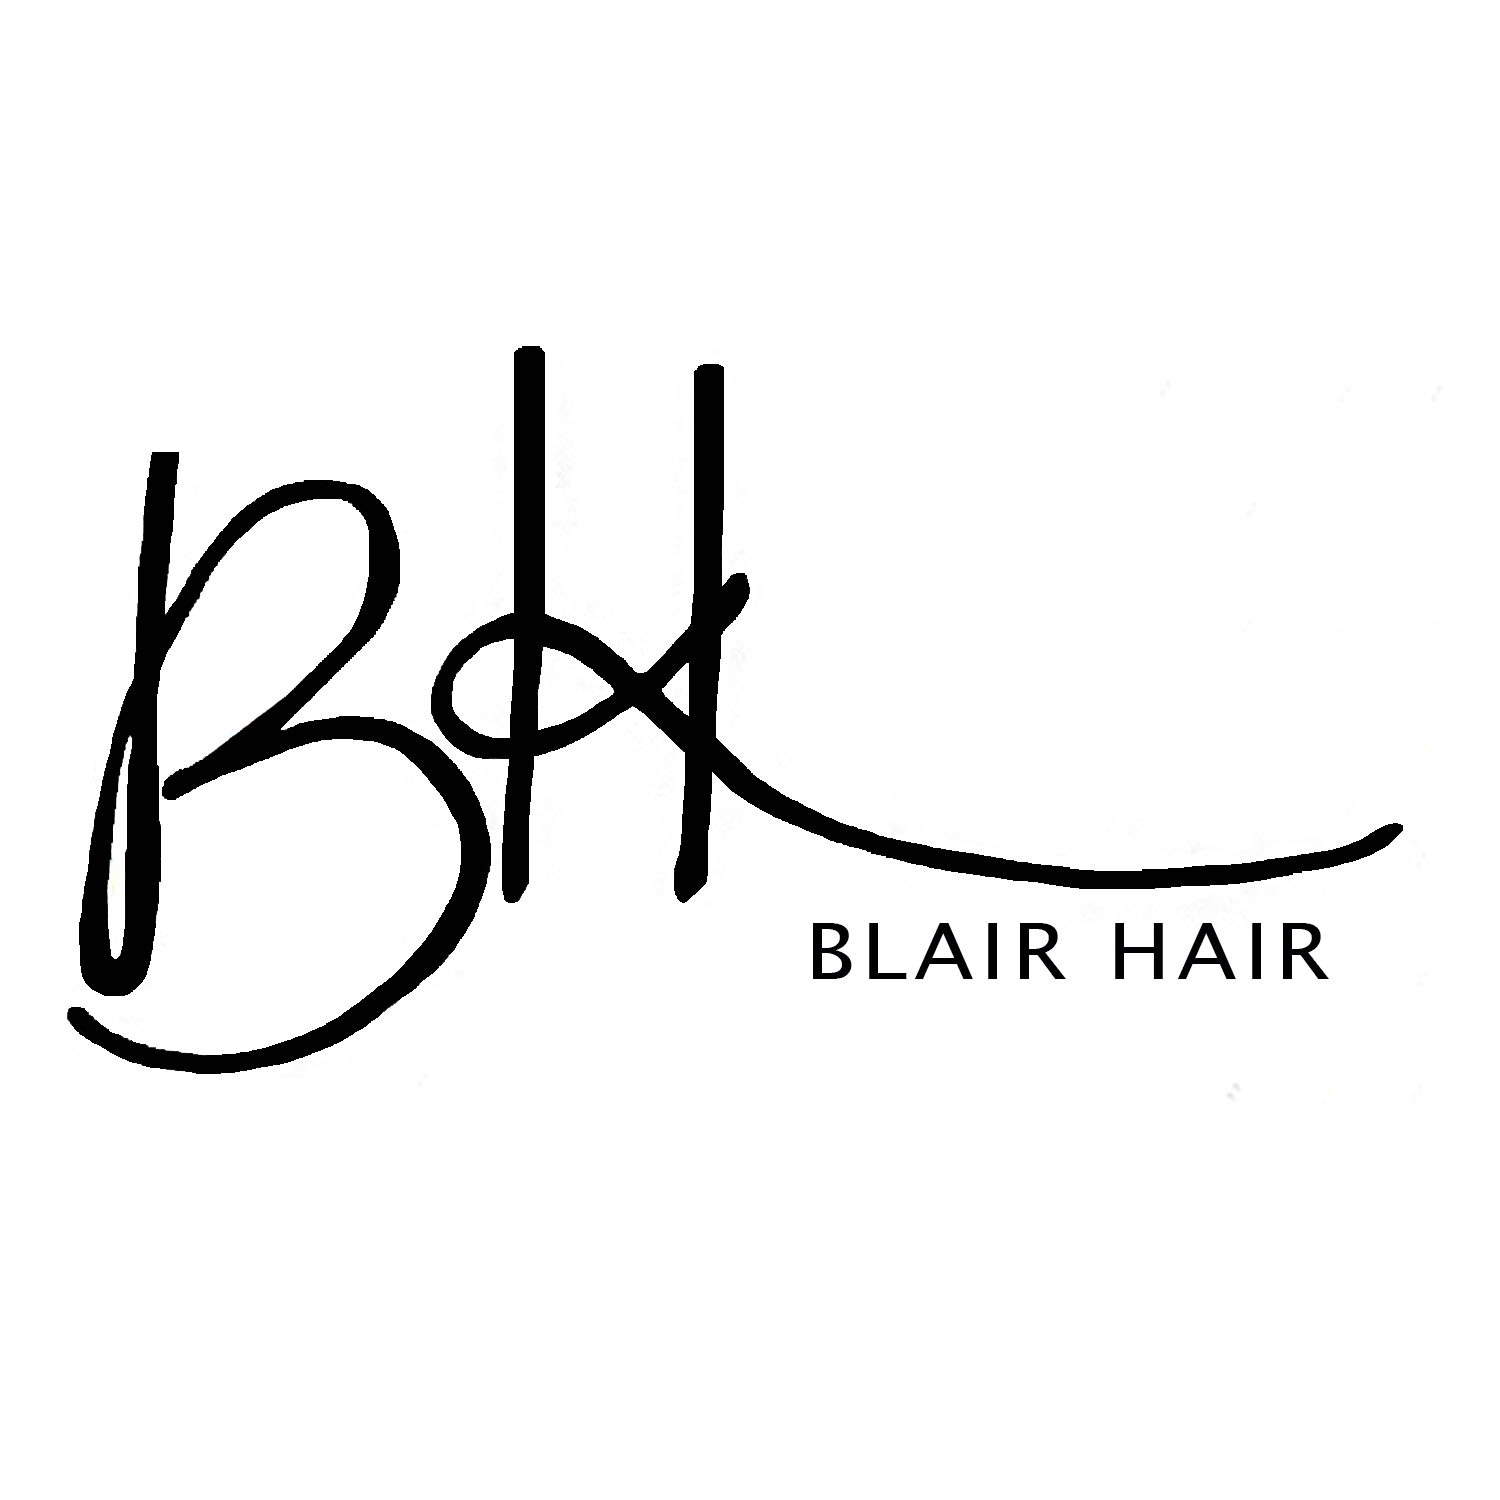 Blair Hair